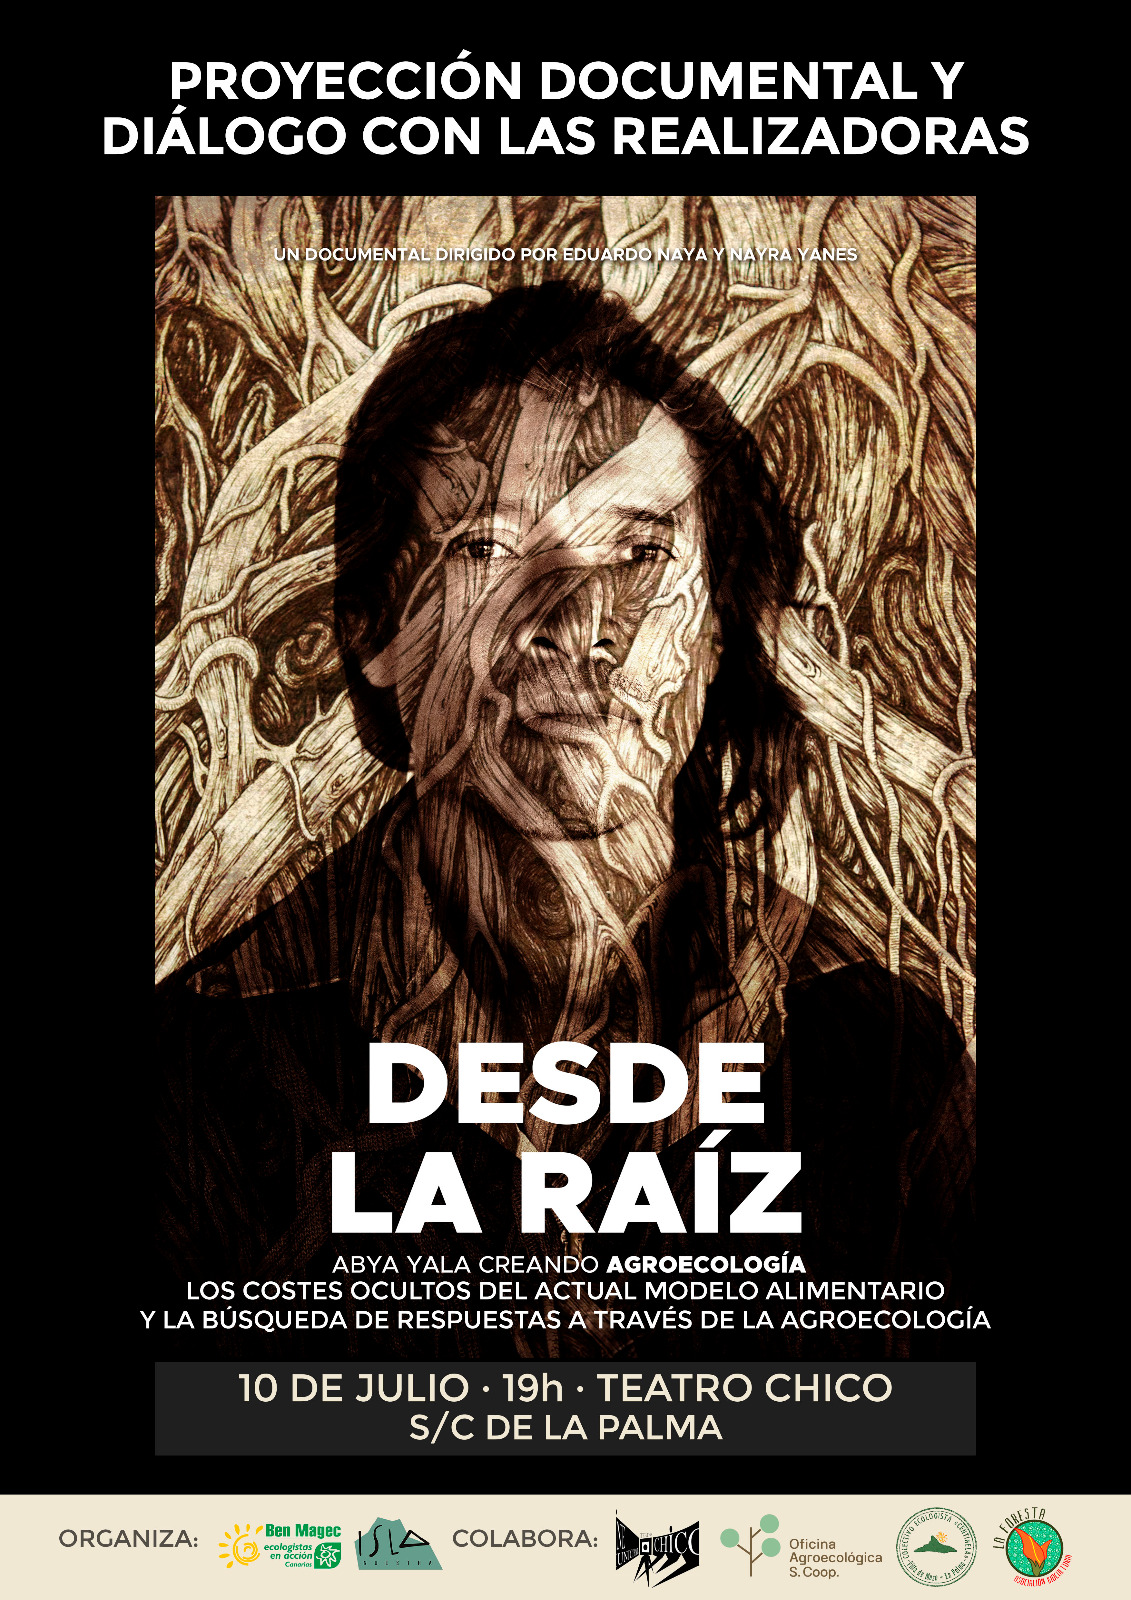 Proyección del documental "Desde la raíz" en el Teatro Chico de la Palma